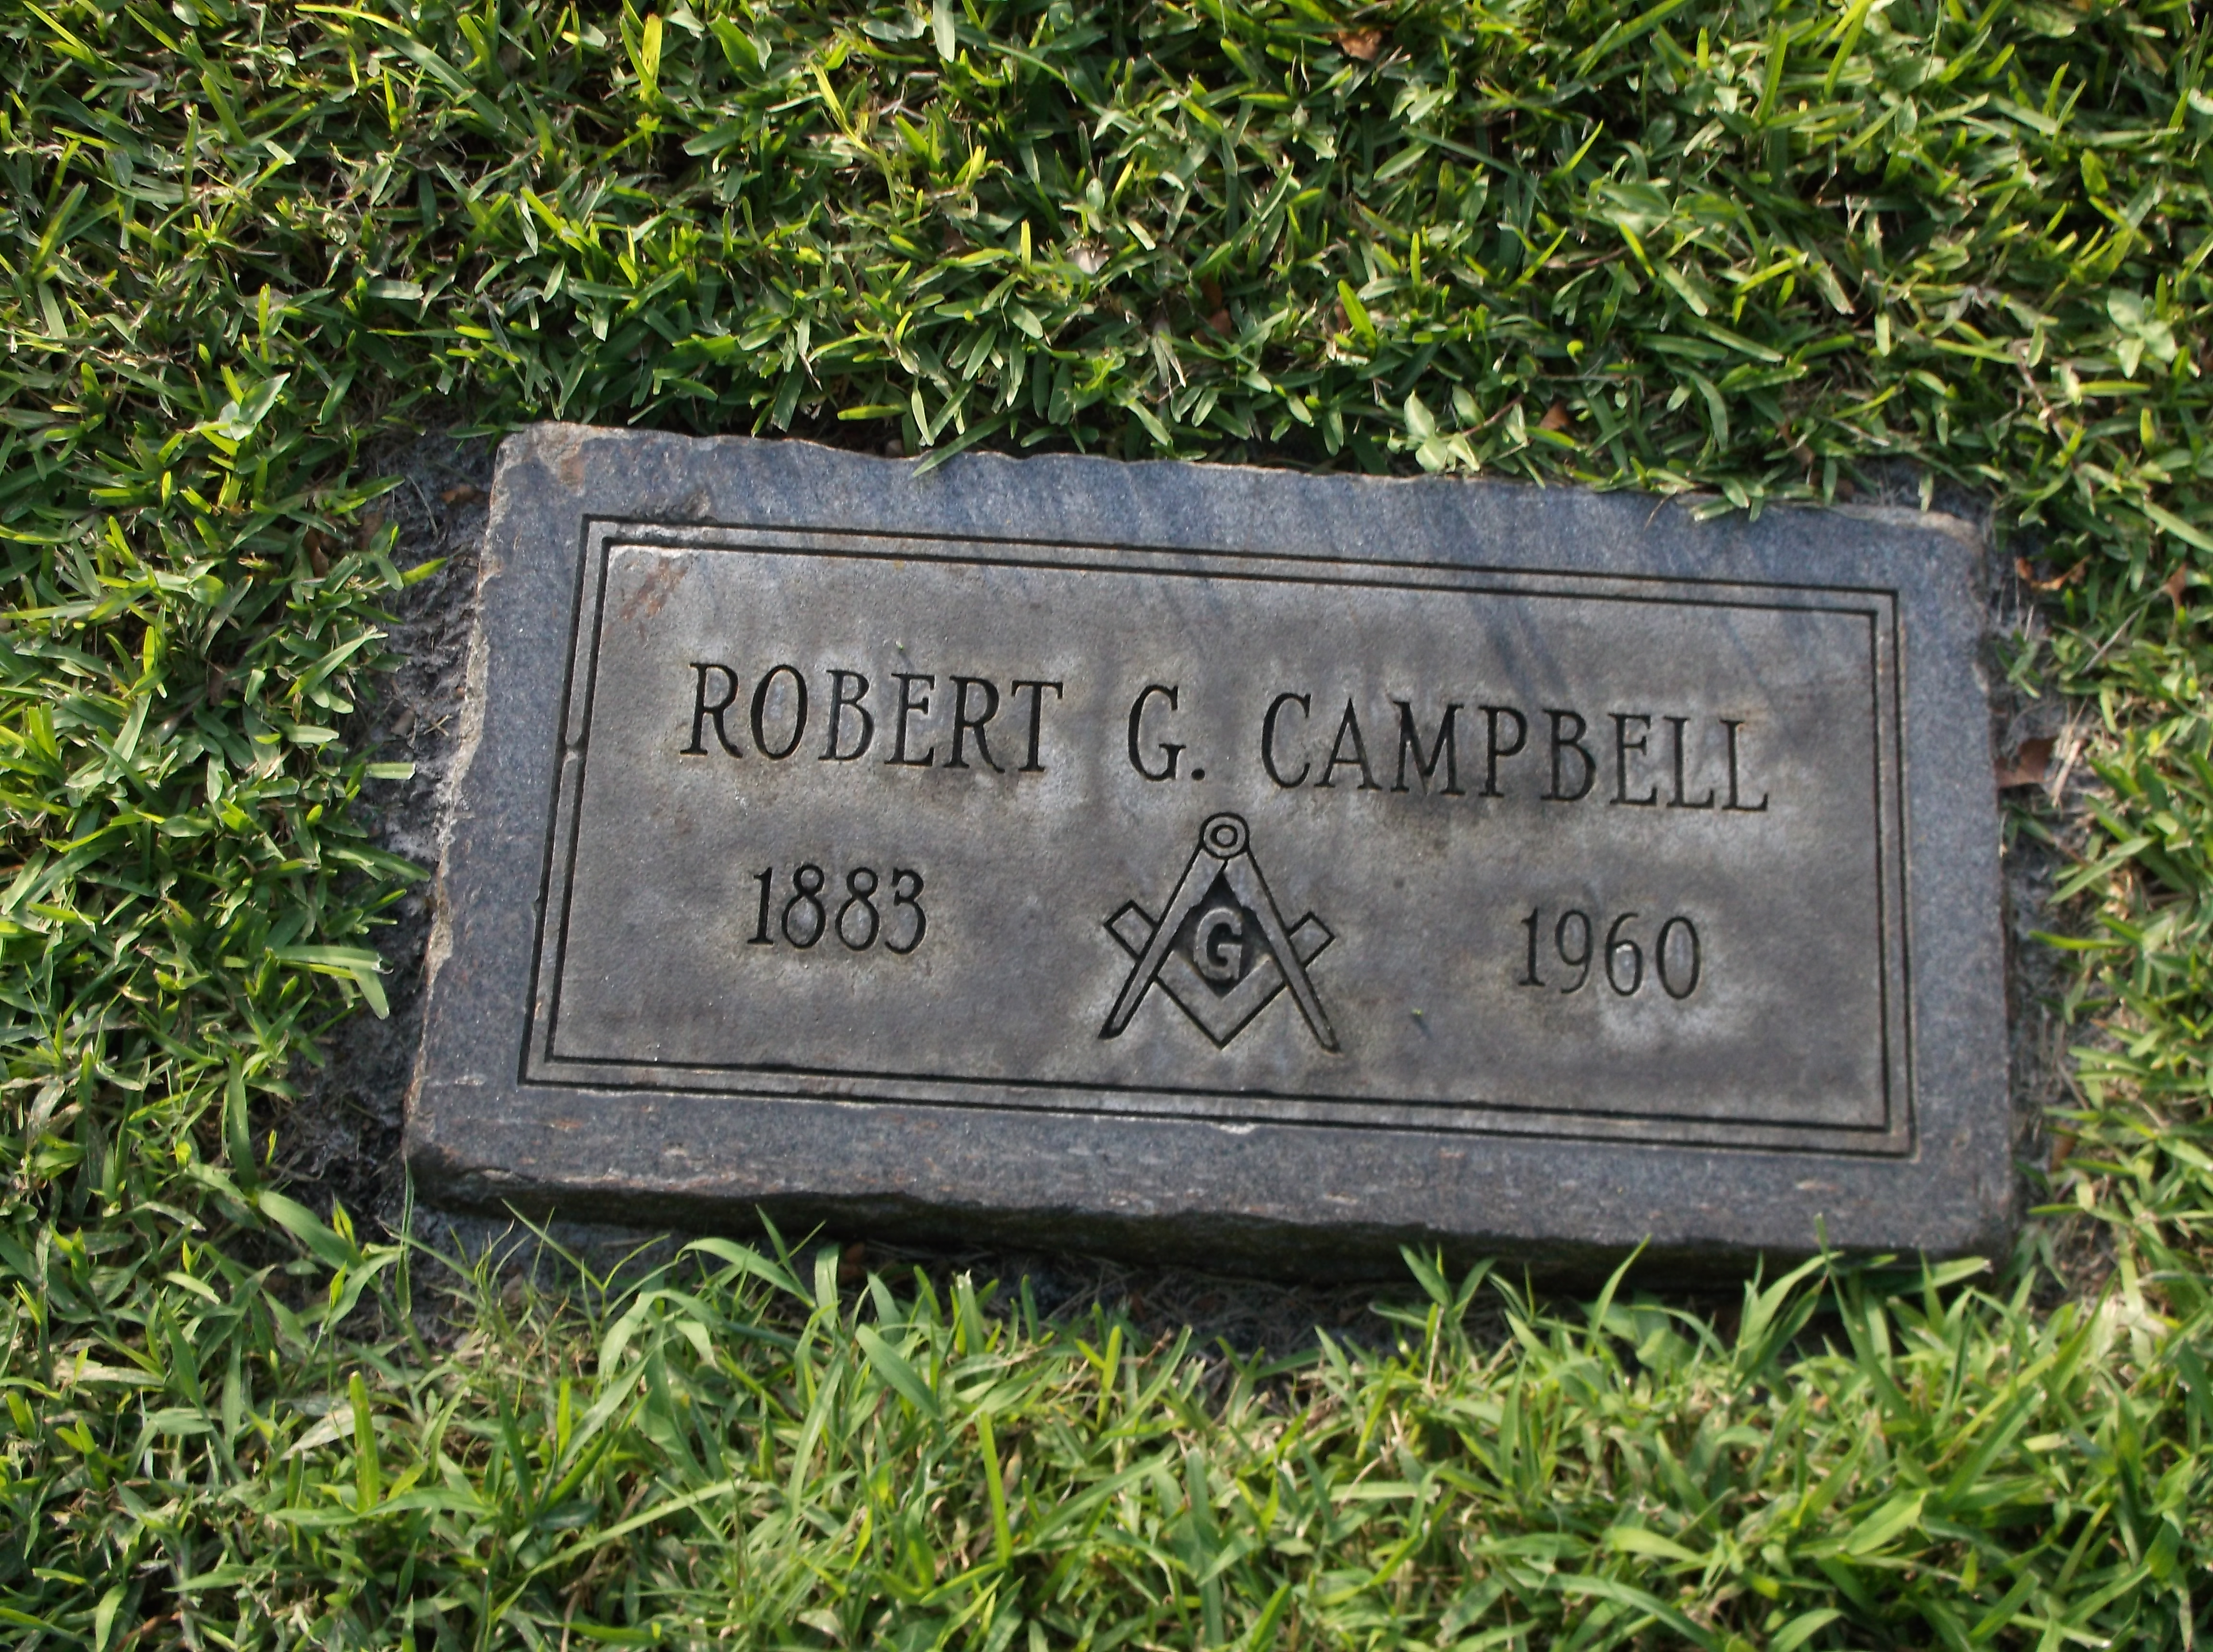 Robert G Campbell